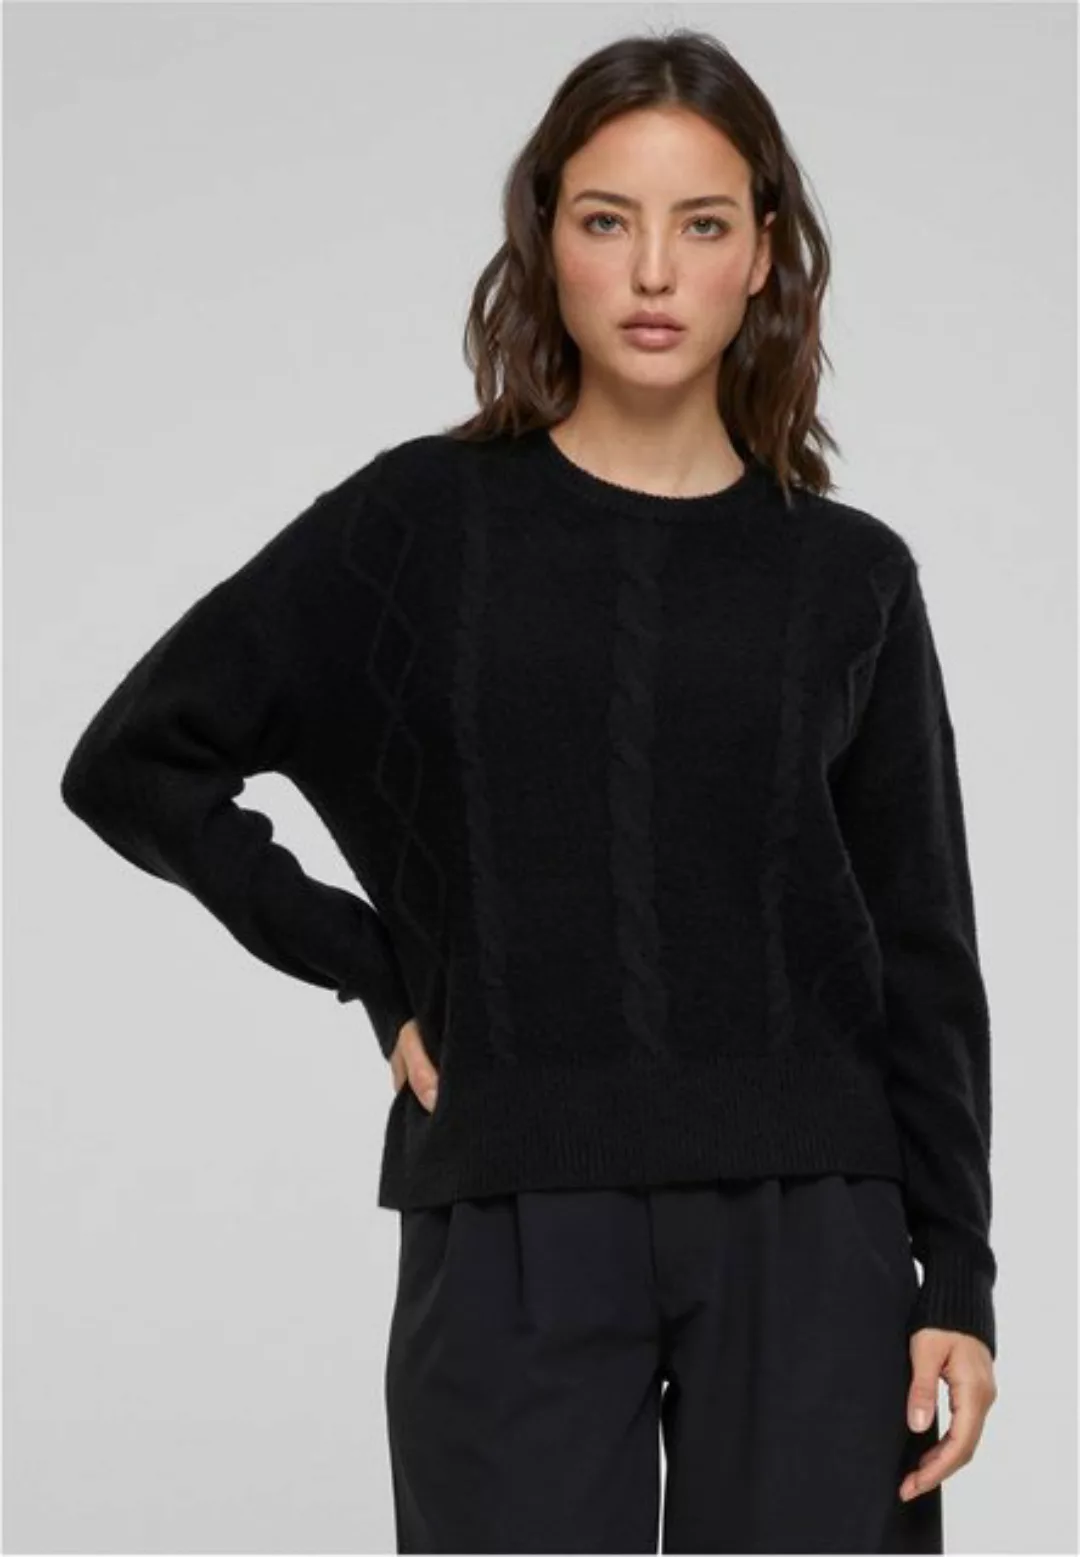 URBAN CLASSICS Rundhalspullover Ladies Cabel Knit Sweater günstig online kaufen